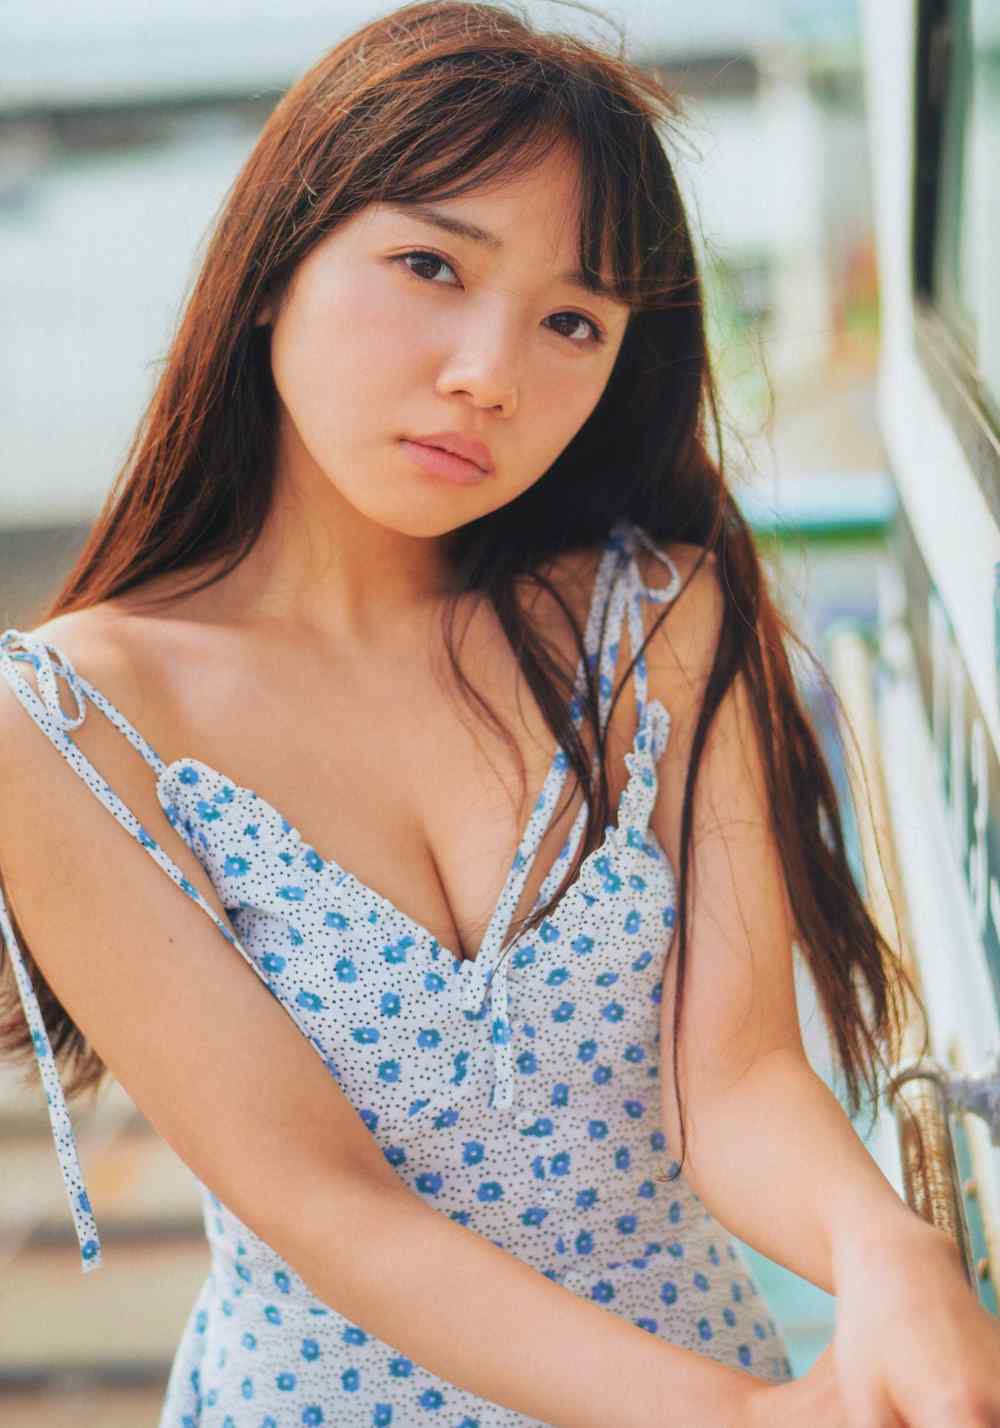 Kyoko Saito Sexy and Hottest Photos , Latest Pics